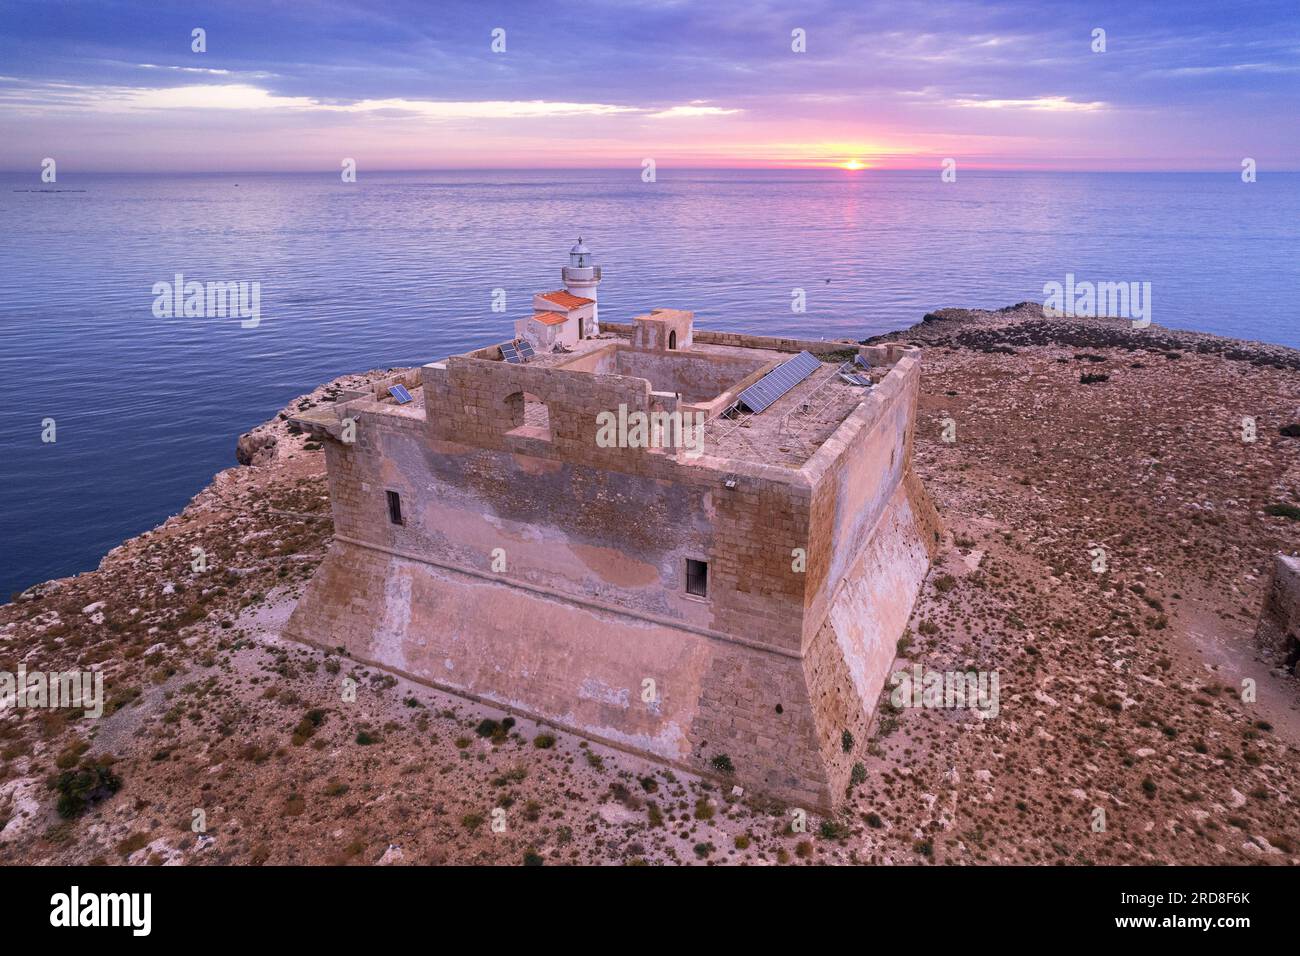 Luftaufnahme des befestigten Turms mit dem Leuchtturm, der bei Sonnenaufgang auf der Insel Capo Passero erbaut wurde, Insel Capo Passero Stockfoto